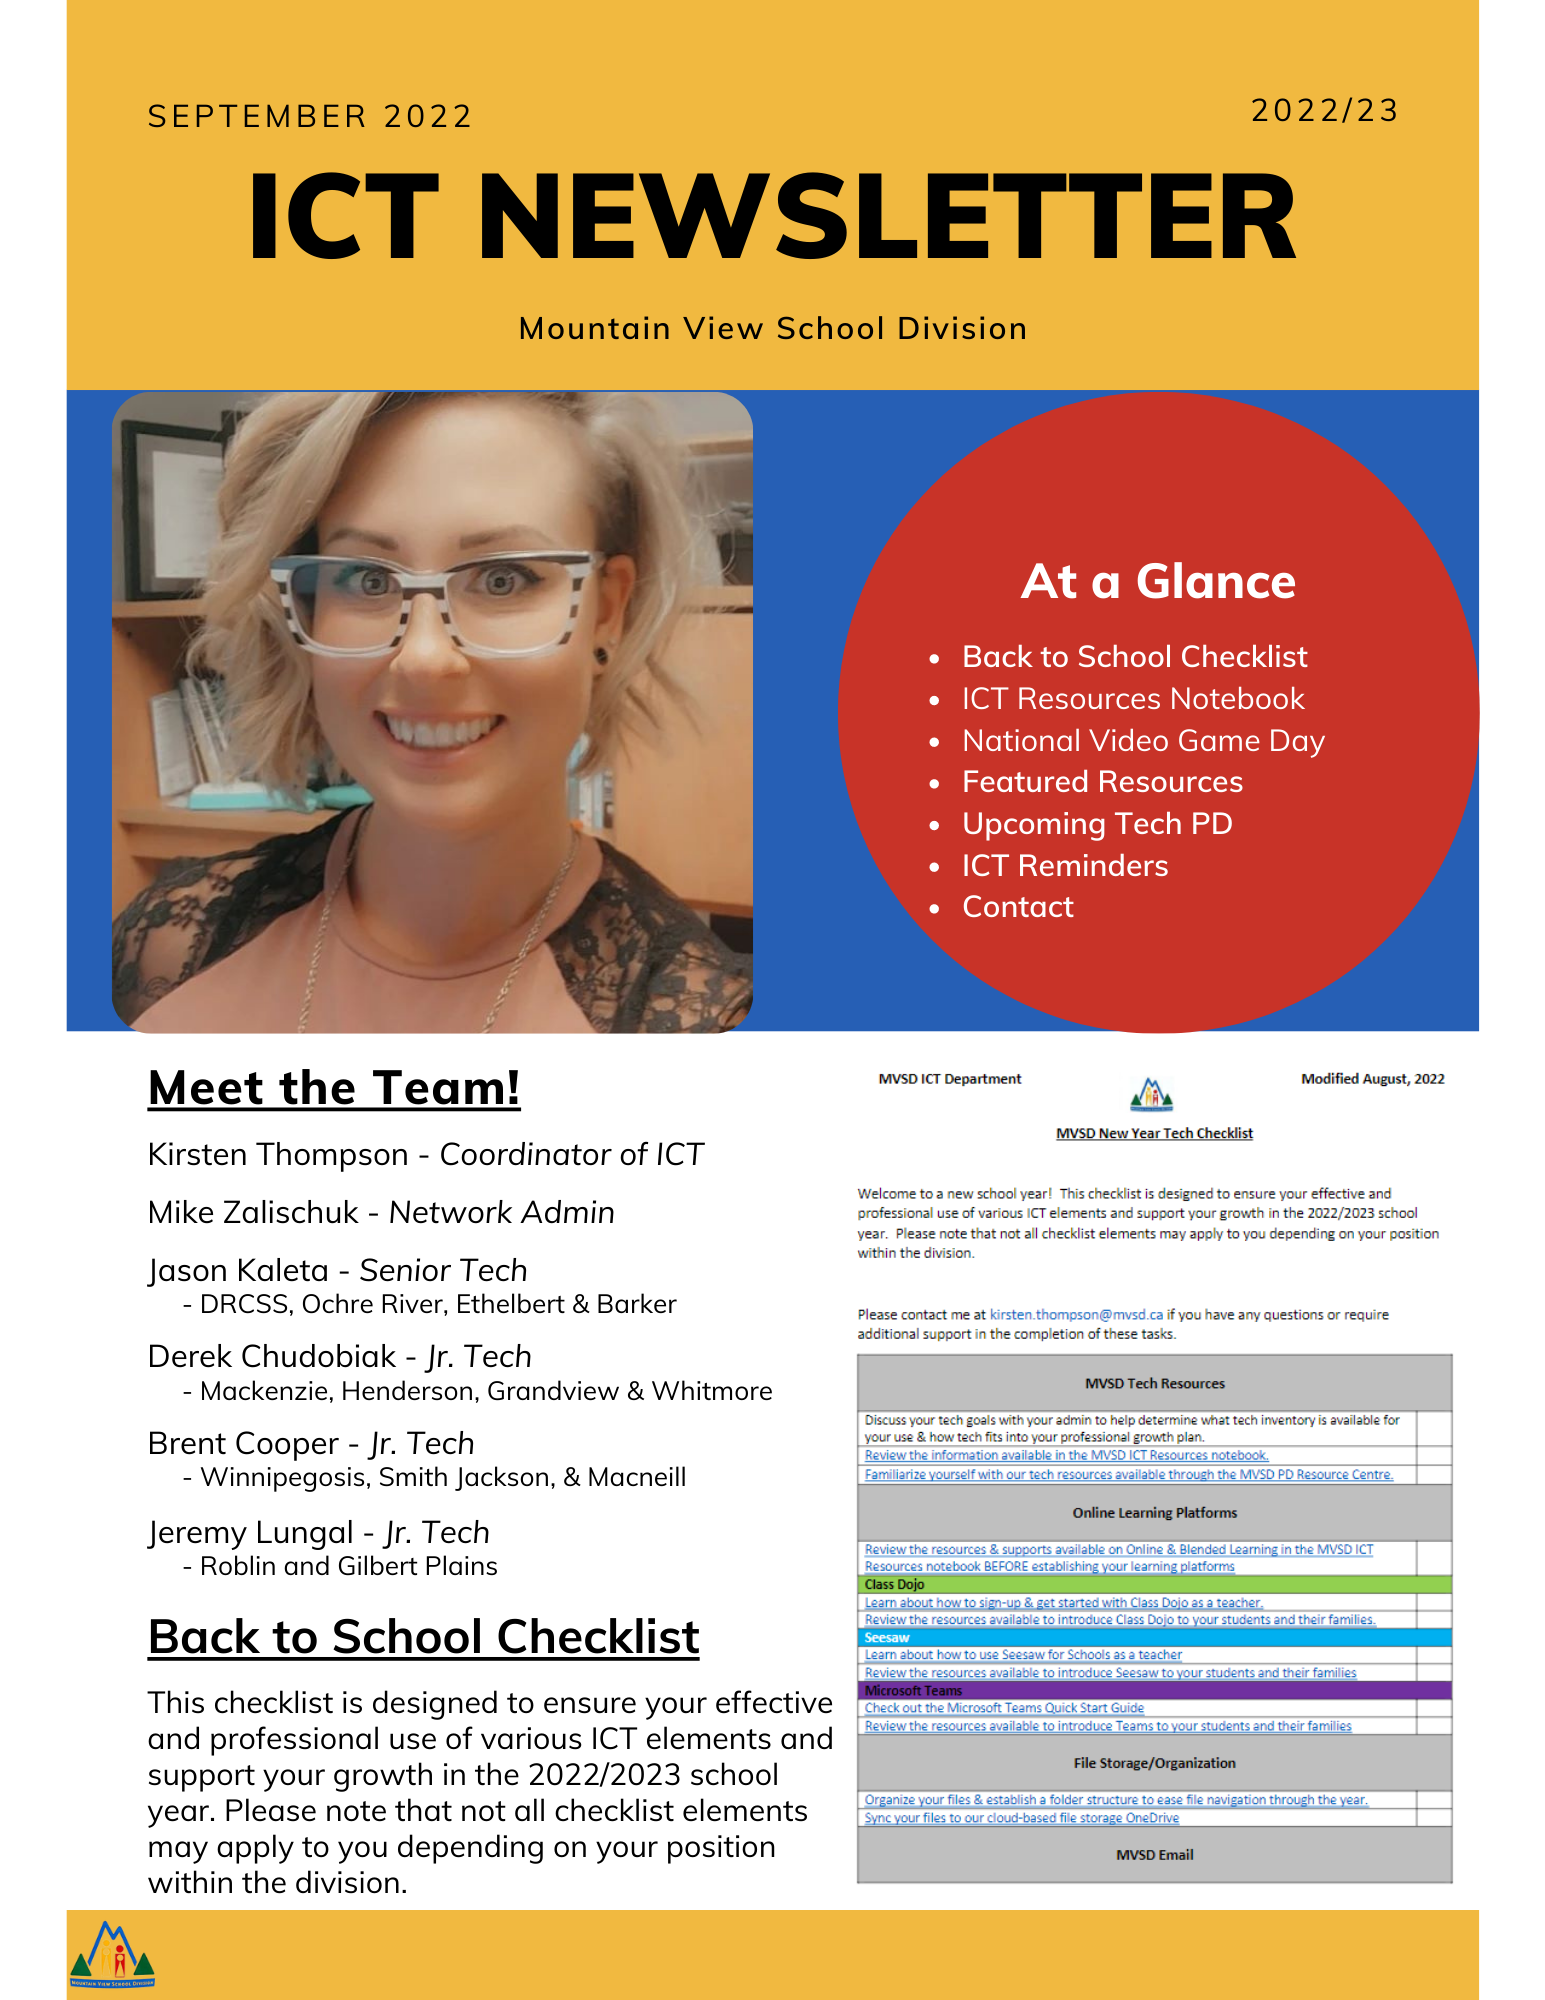 September ICT Newsletter